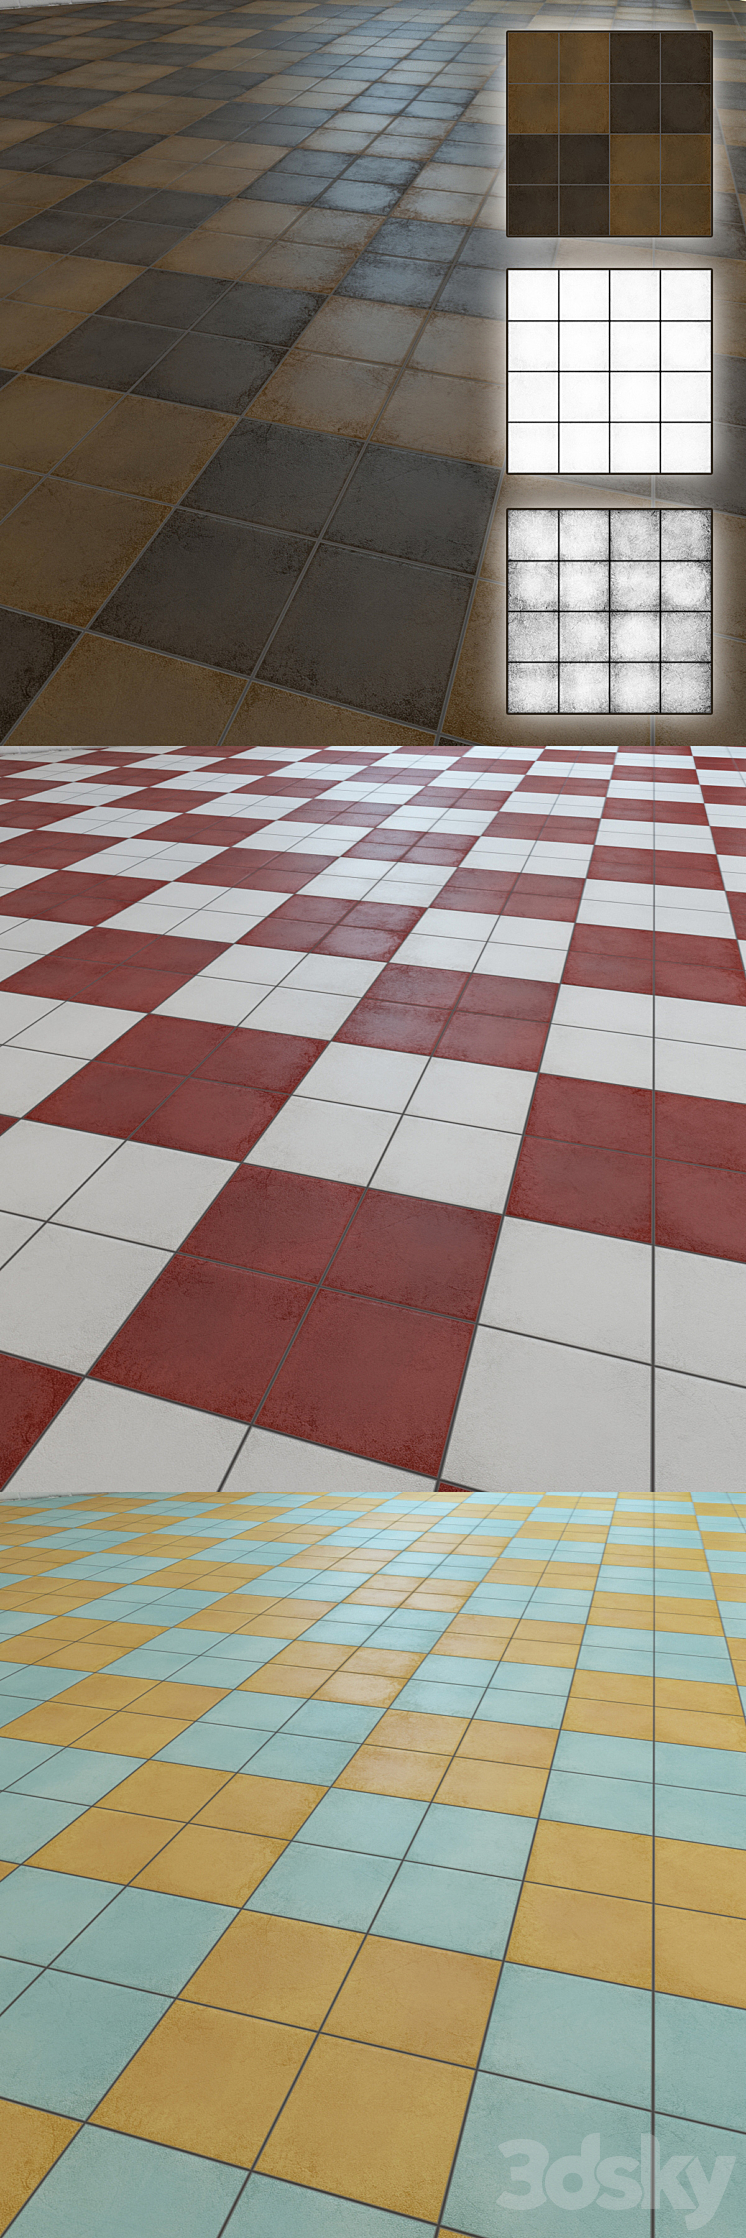 Floor tiles "BARBER" 3DS Max Model - thumbnail 2